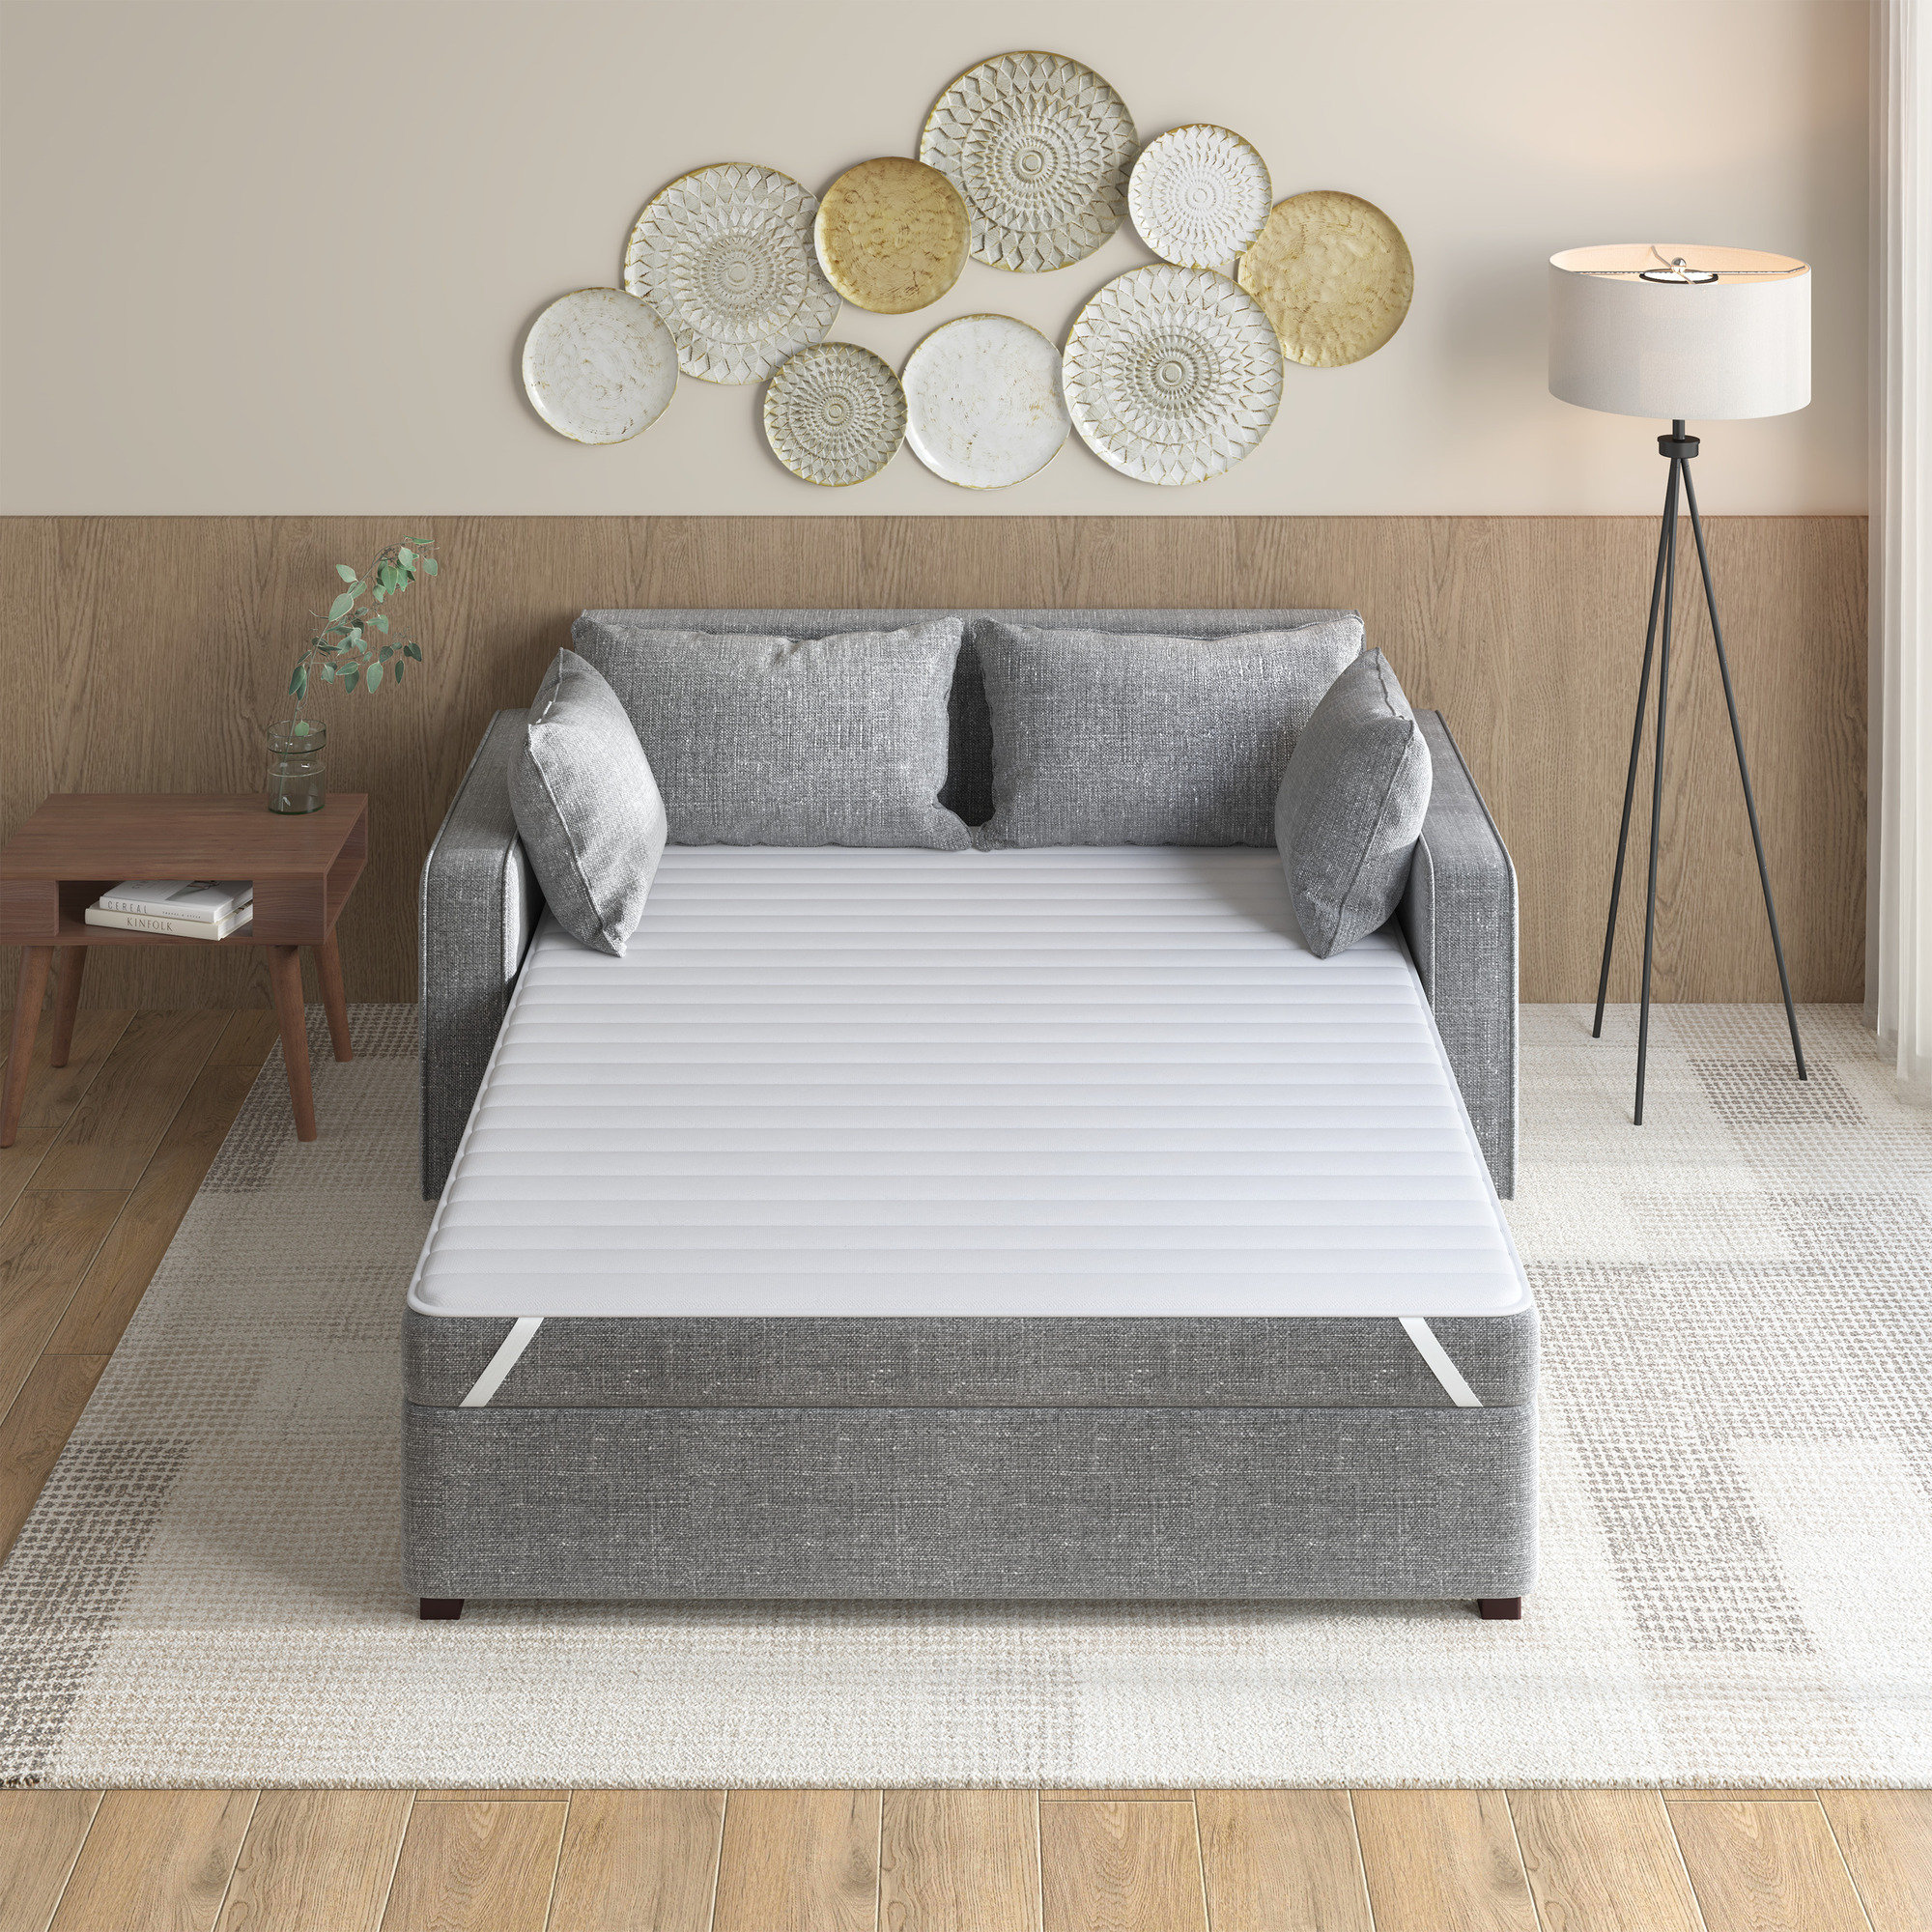 https://assets.wfcdn.com/im/78508368/compr-r85/2456/245636457/pinehur-ultra-soft-microfiber-waterproof-sofa-bed-mattress-pad.jpg